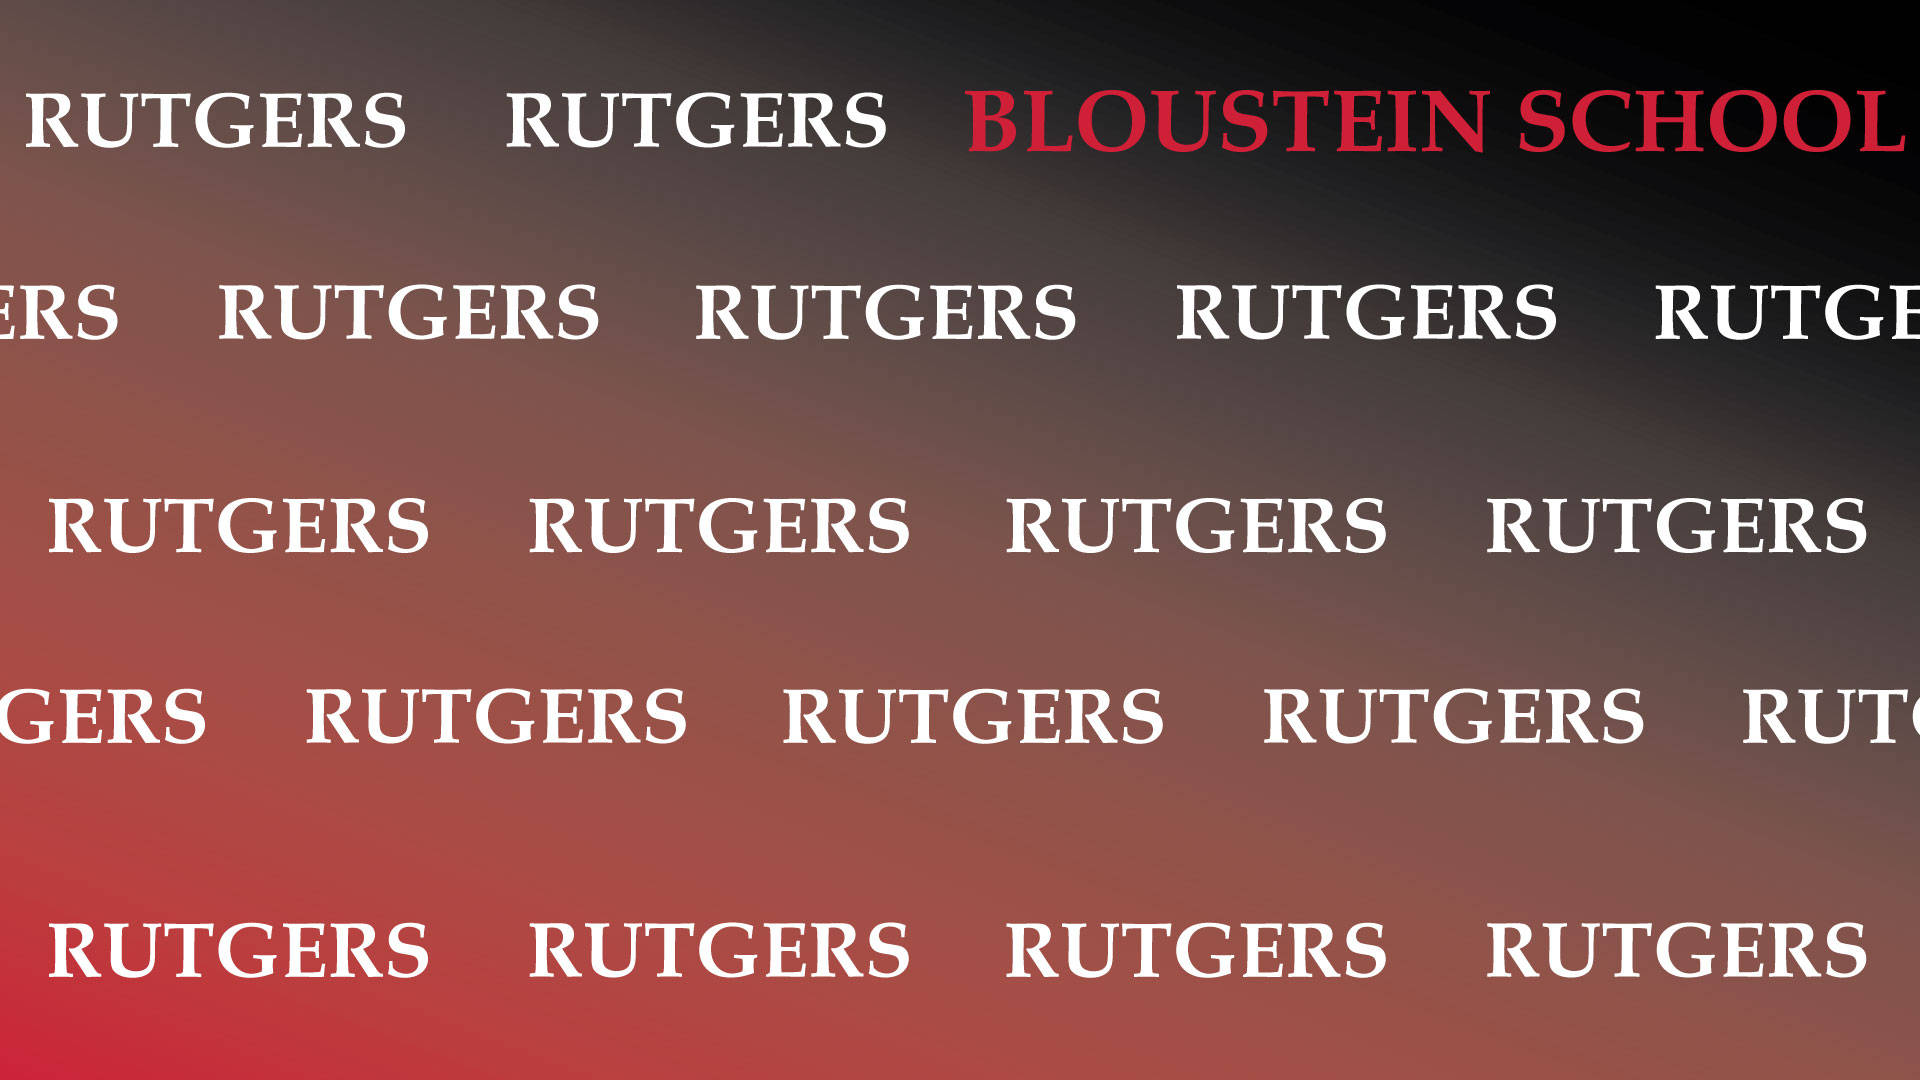 Einfachehintergrund Für Die Rutgers Bloustein Schule. Wallpaper